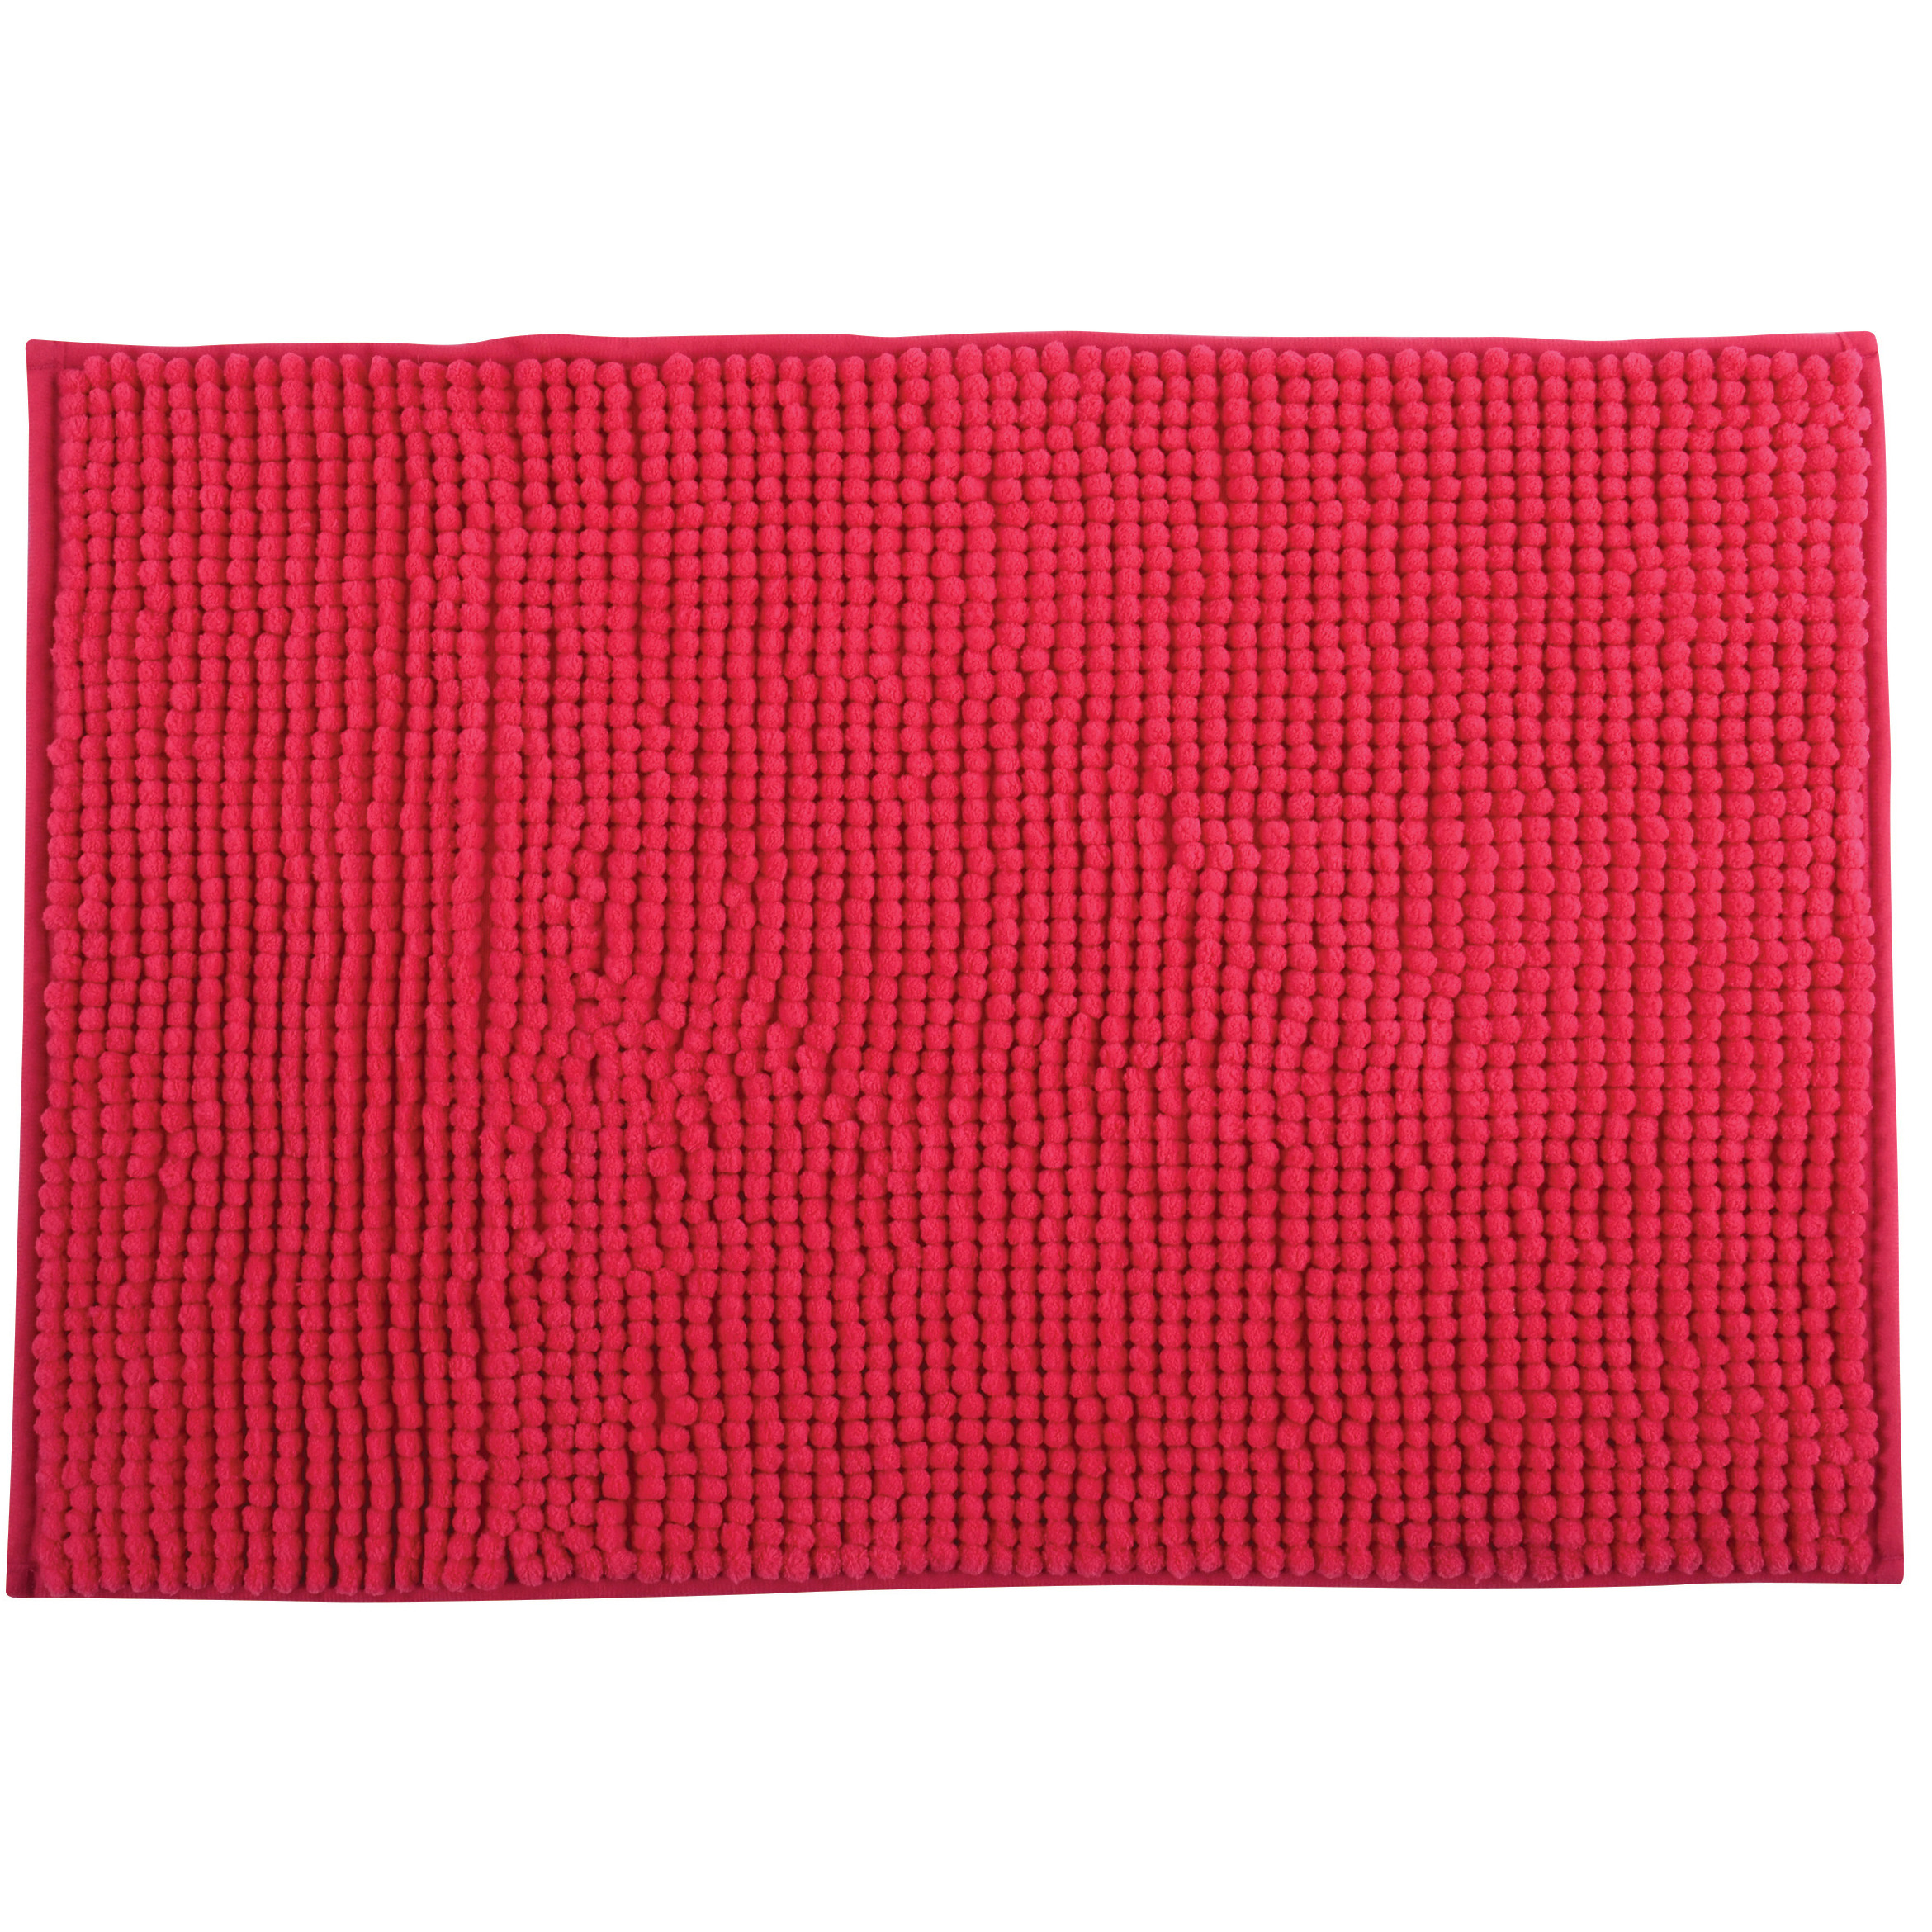 Badkamerkleedje-badmat tapijt voor op de vloer fuchsia roze 40 x 60 cm